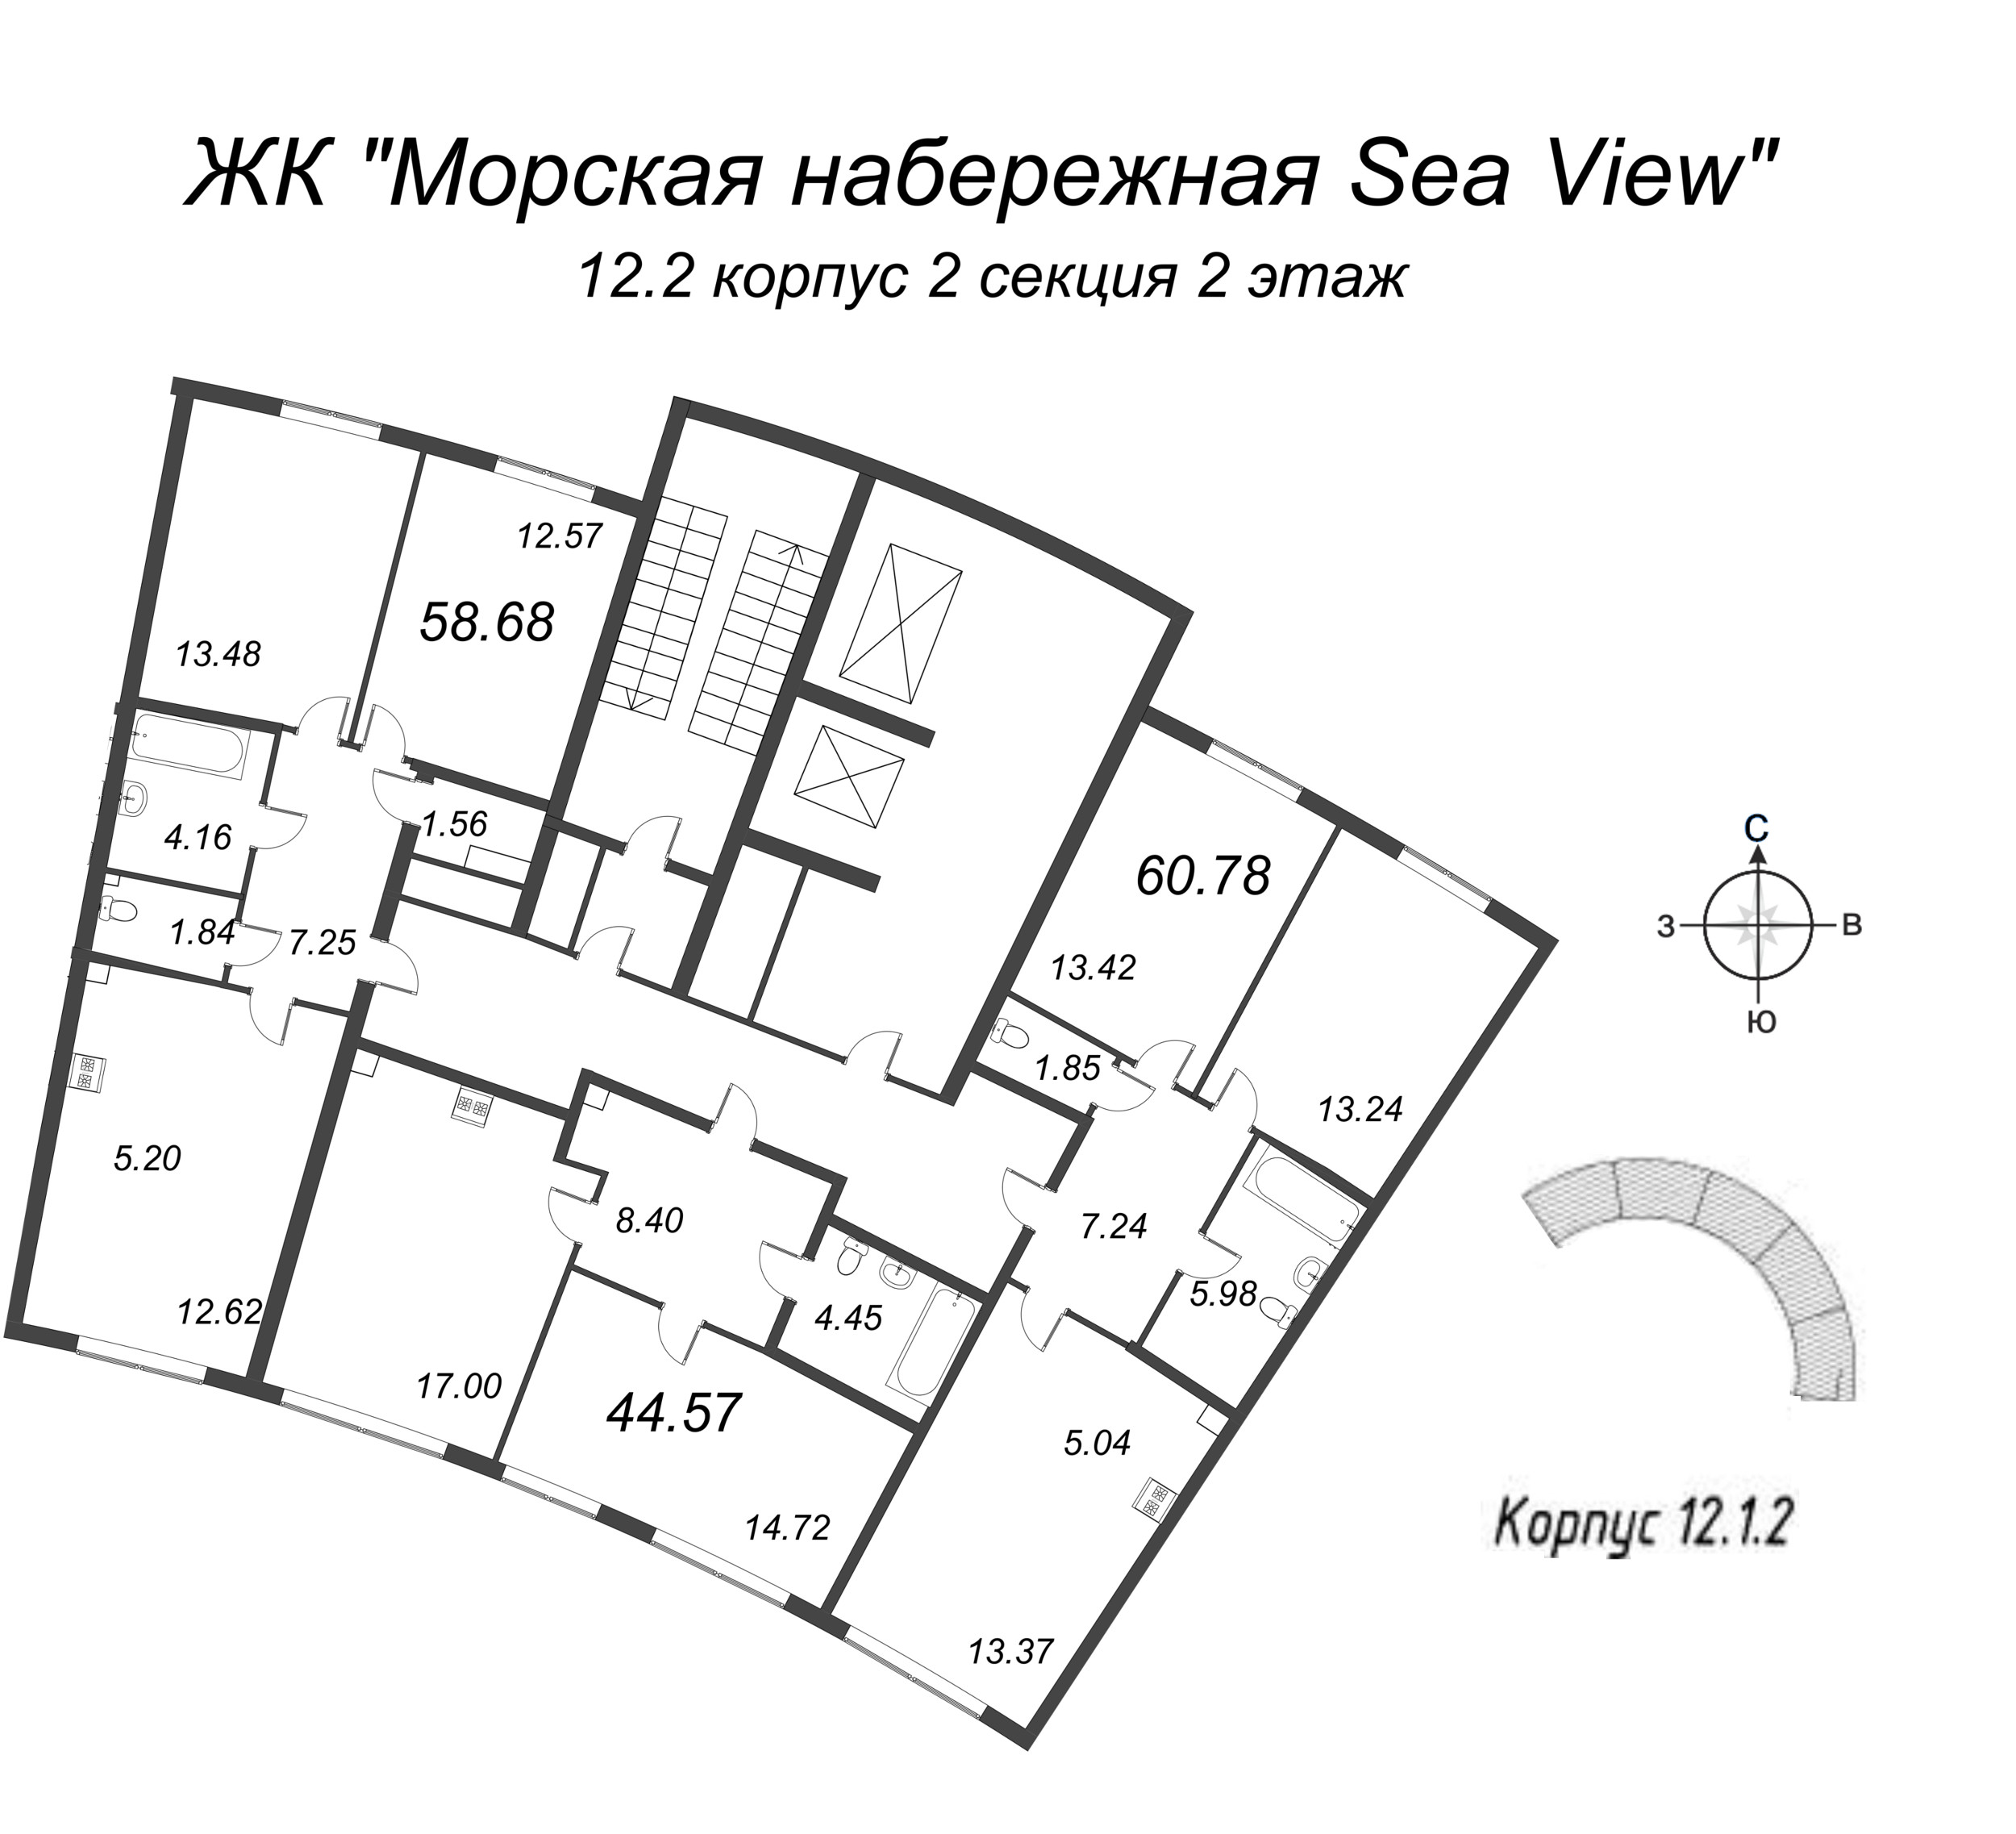 3-комнатная (Евро) квартира, 60.78 м² в ЖК "Морская набережная. SeaView" - планировка этажа